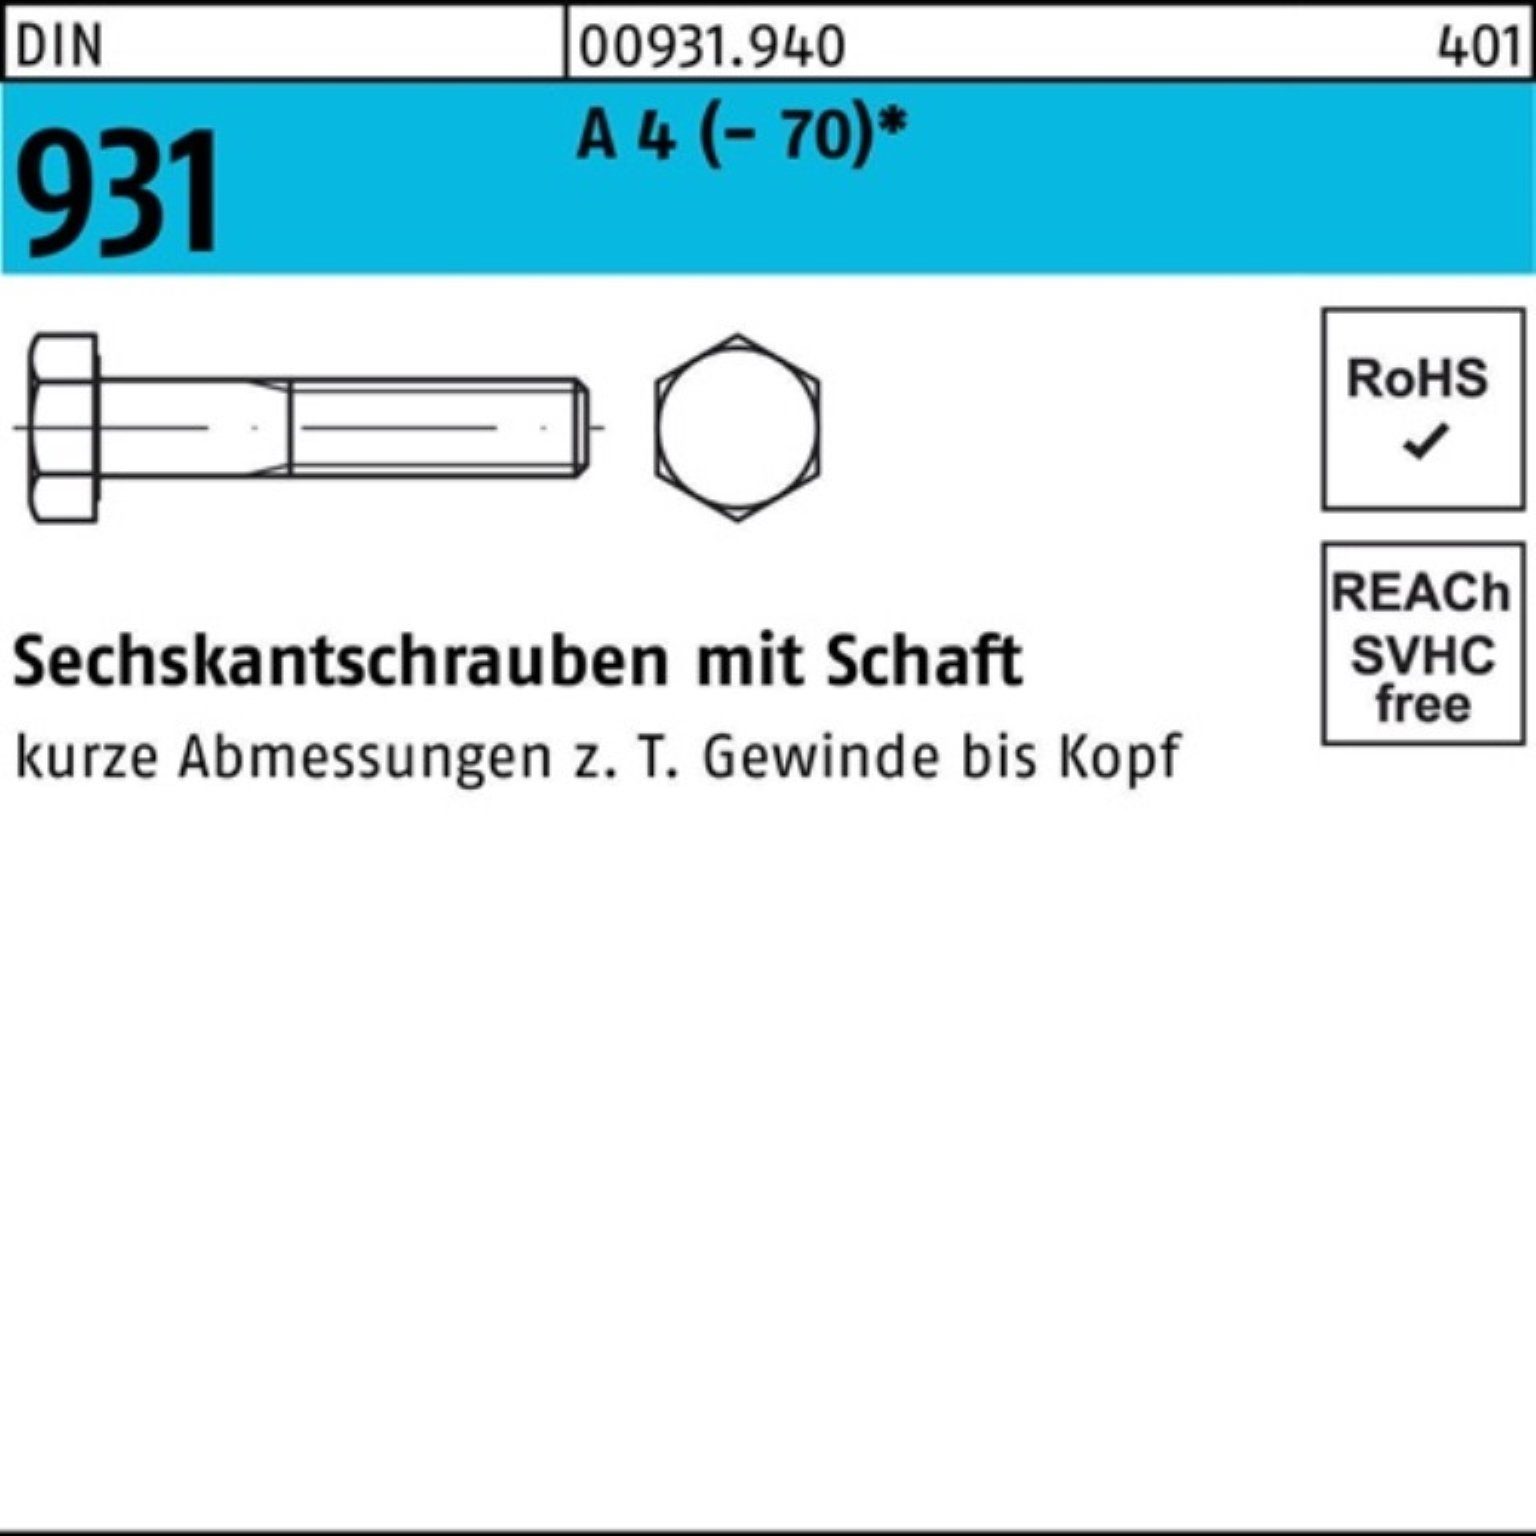 Reyher Sechskantschraube 100er Pack Schaft Sechskantschraube Stü 4 (70) M14x 931 DIN A 50 50